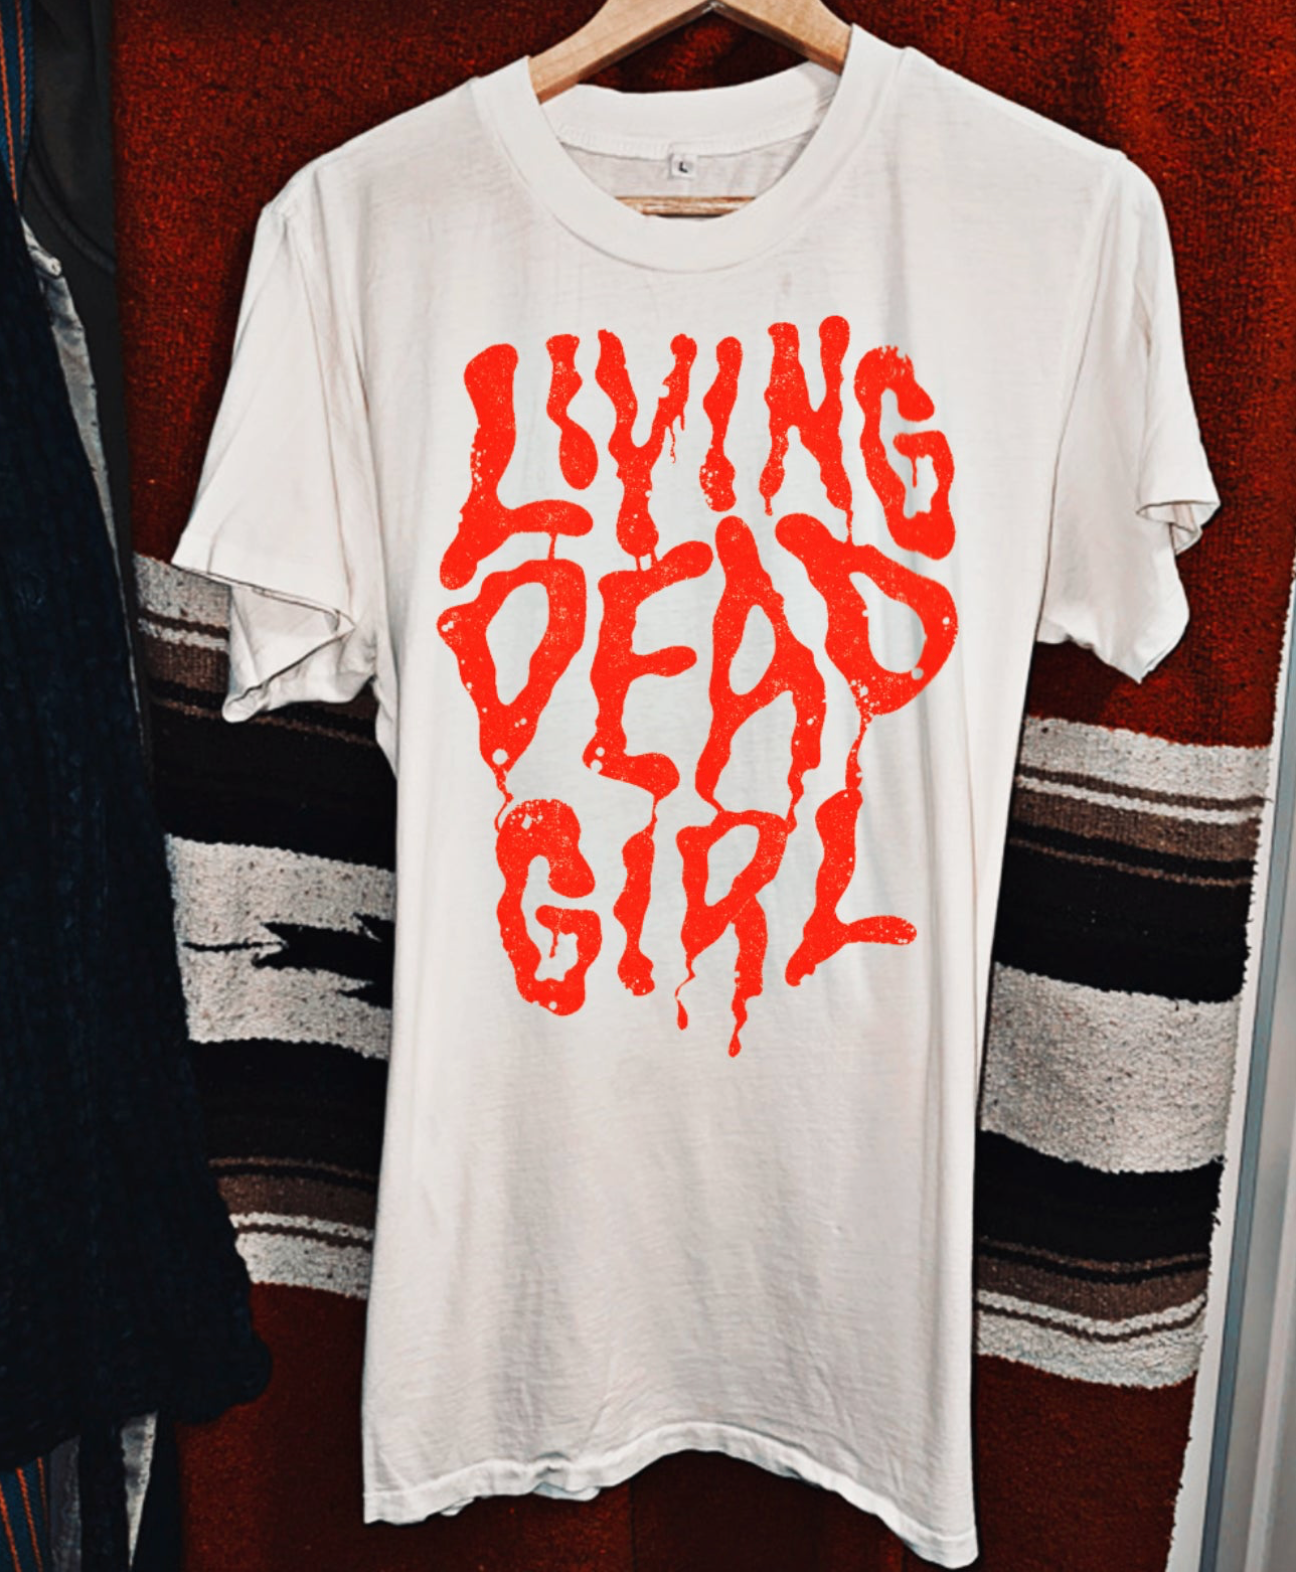 LIVING DEAD GIRL (MENS 2X-3X)